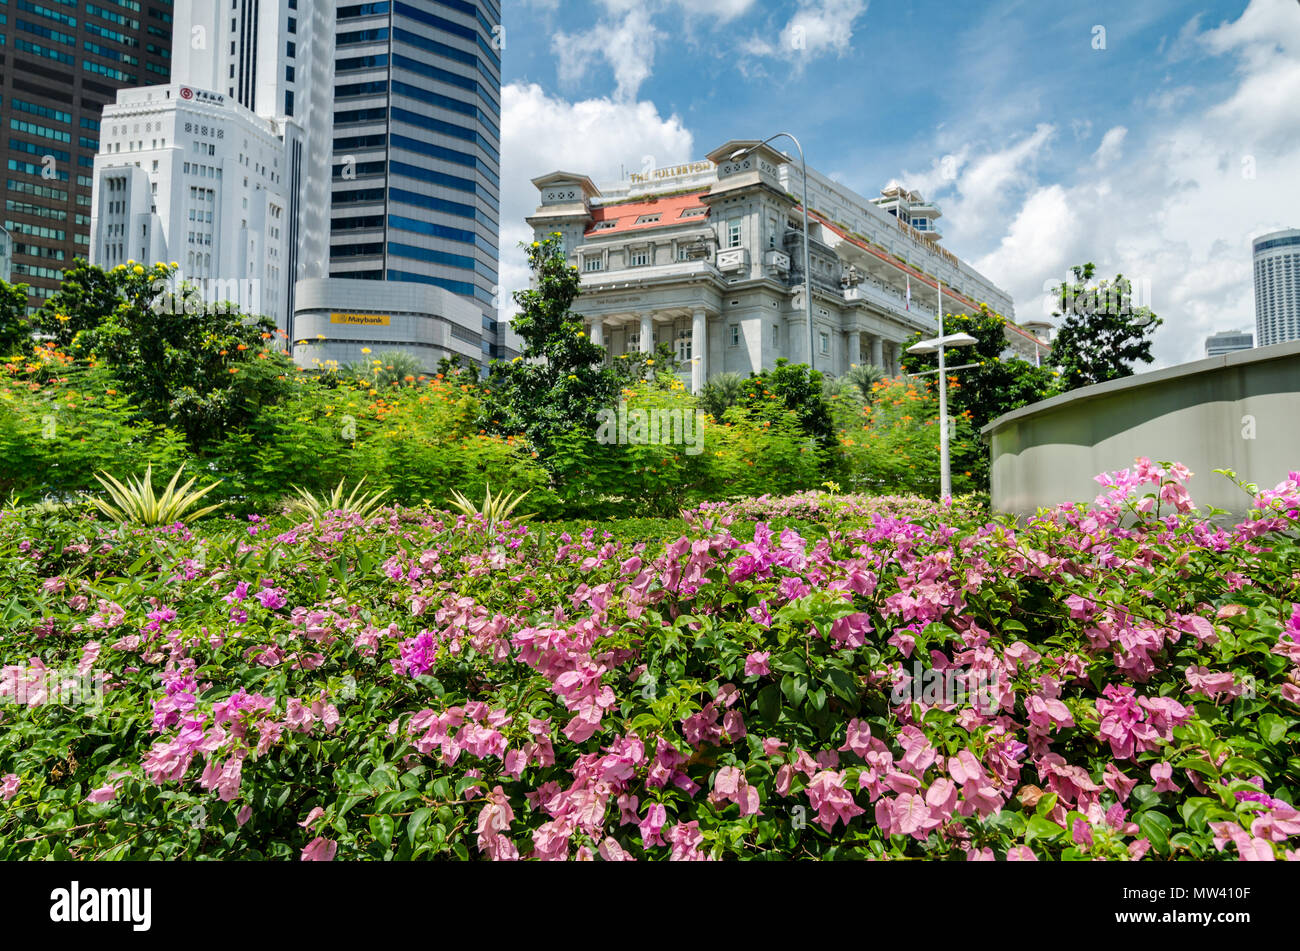 Das Fullerton Hotel ist ein 5 Sterne Hotel in der Innenstadt von Singapur entfernt. Es war früher als das General Post Office Gebäude bekannt. Stockfoto